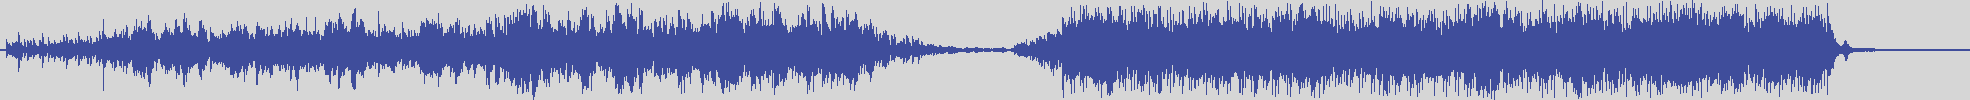 upr [UPR019] Adan, Ilse - Stardust [Original Mix] audio wave form